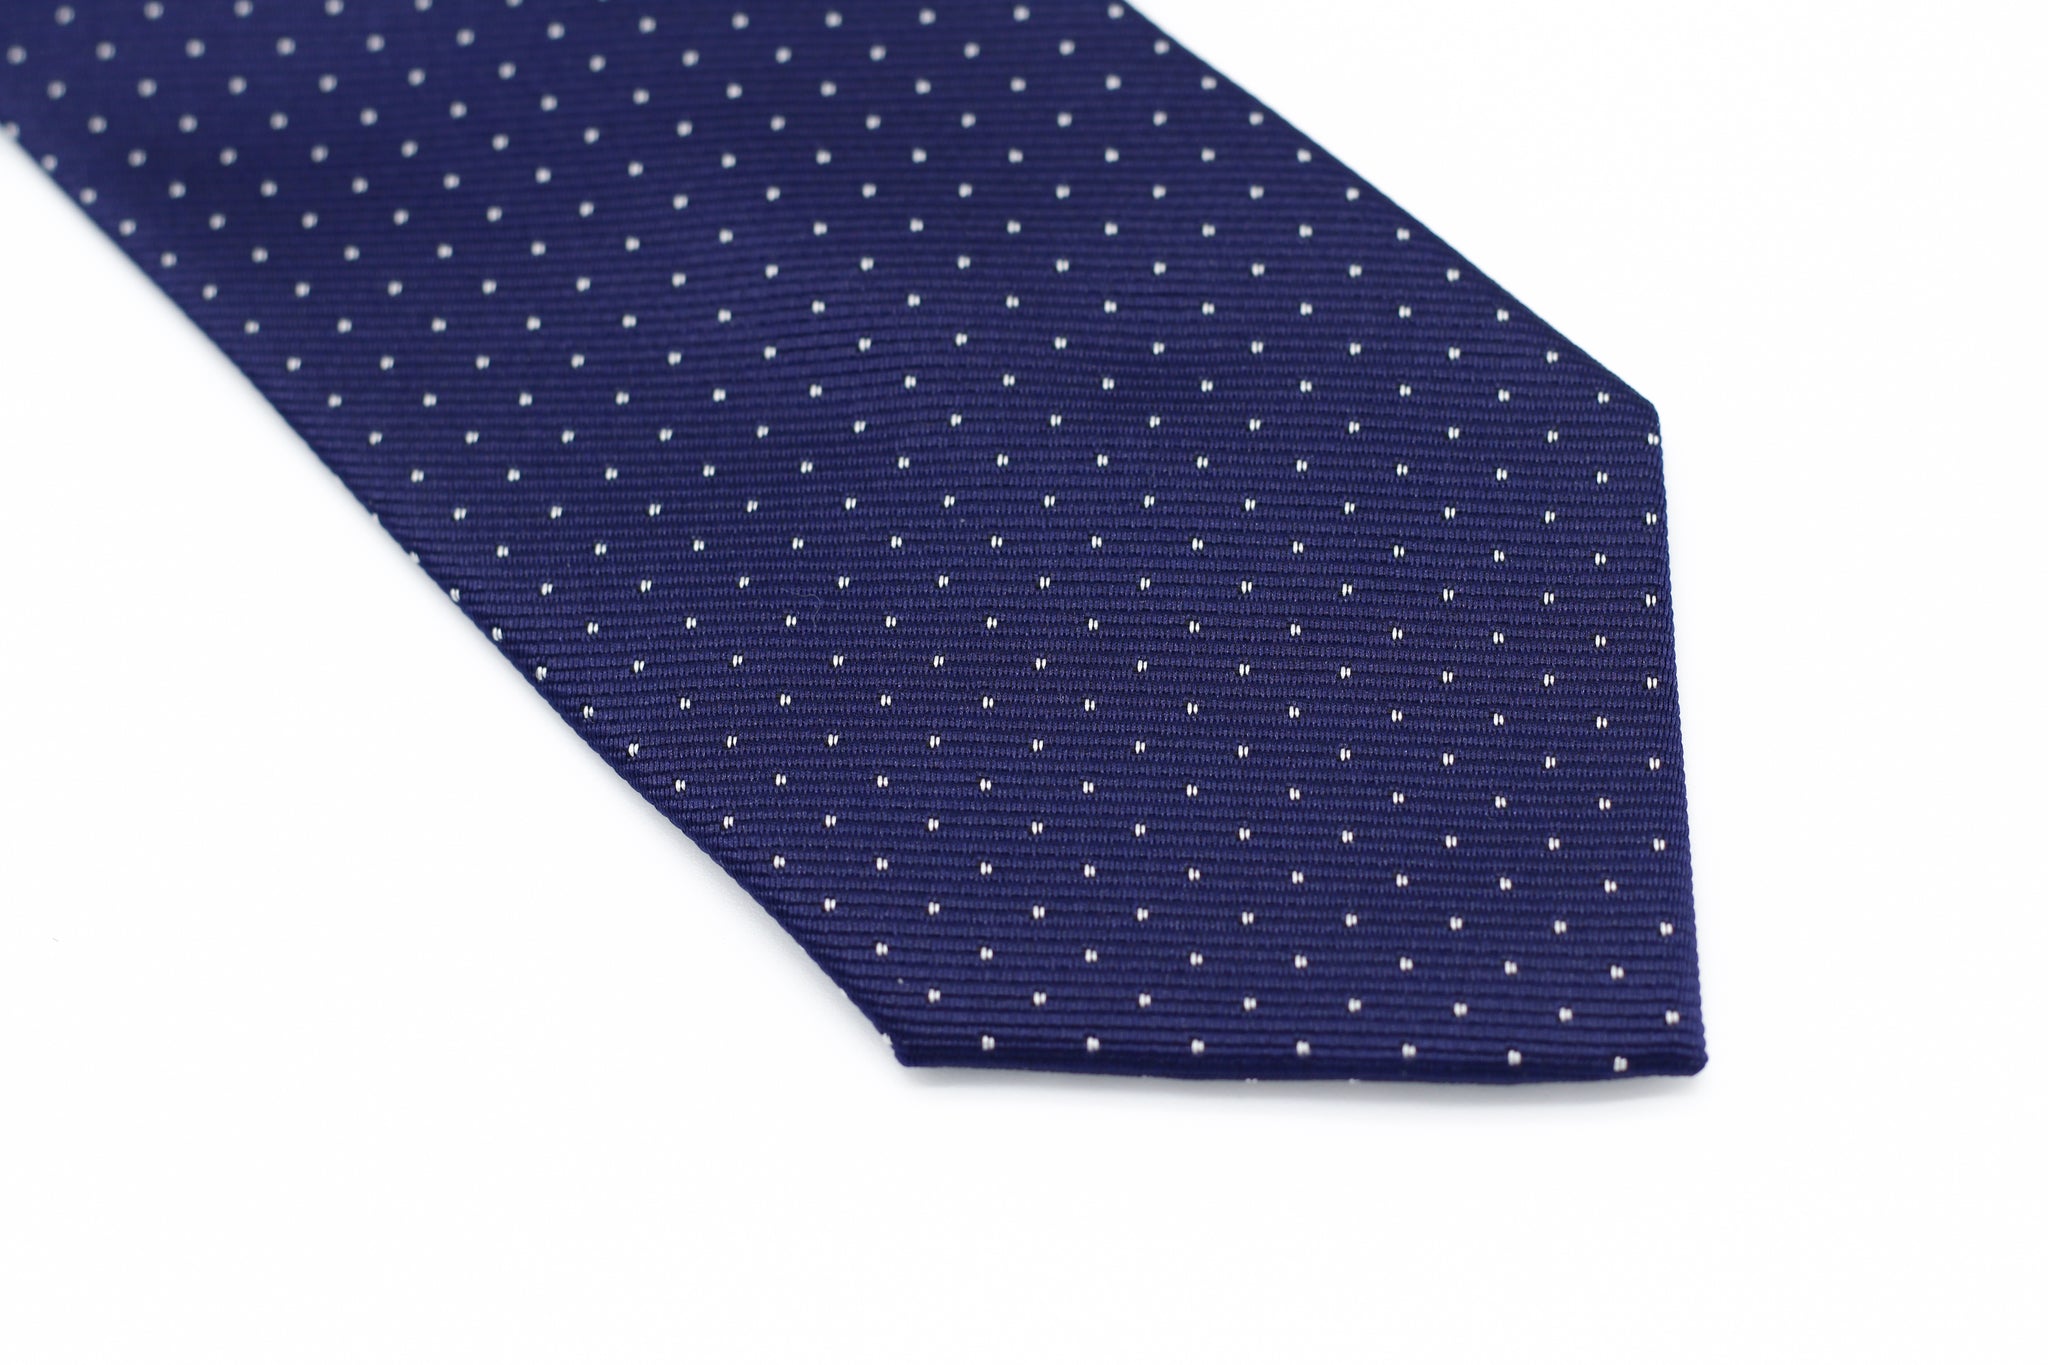 Cravate blanche à micro pois bleue